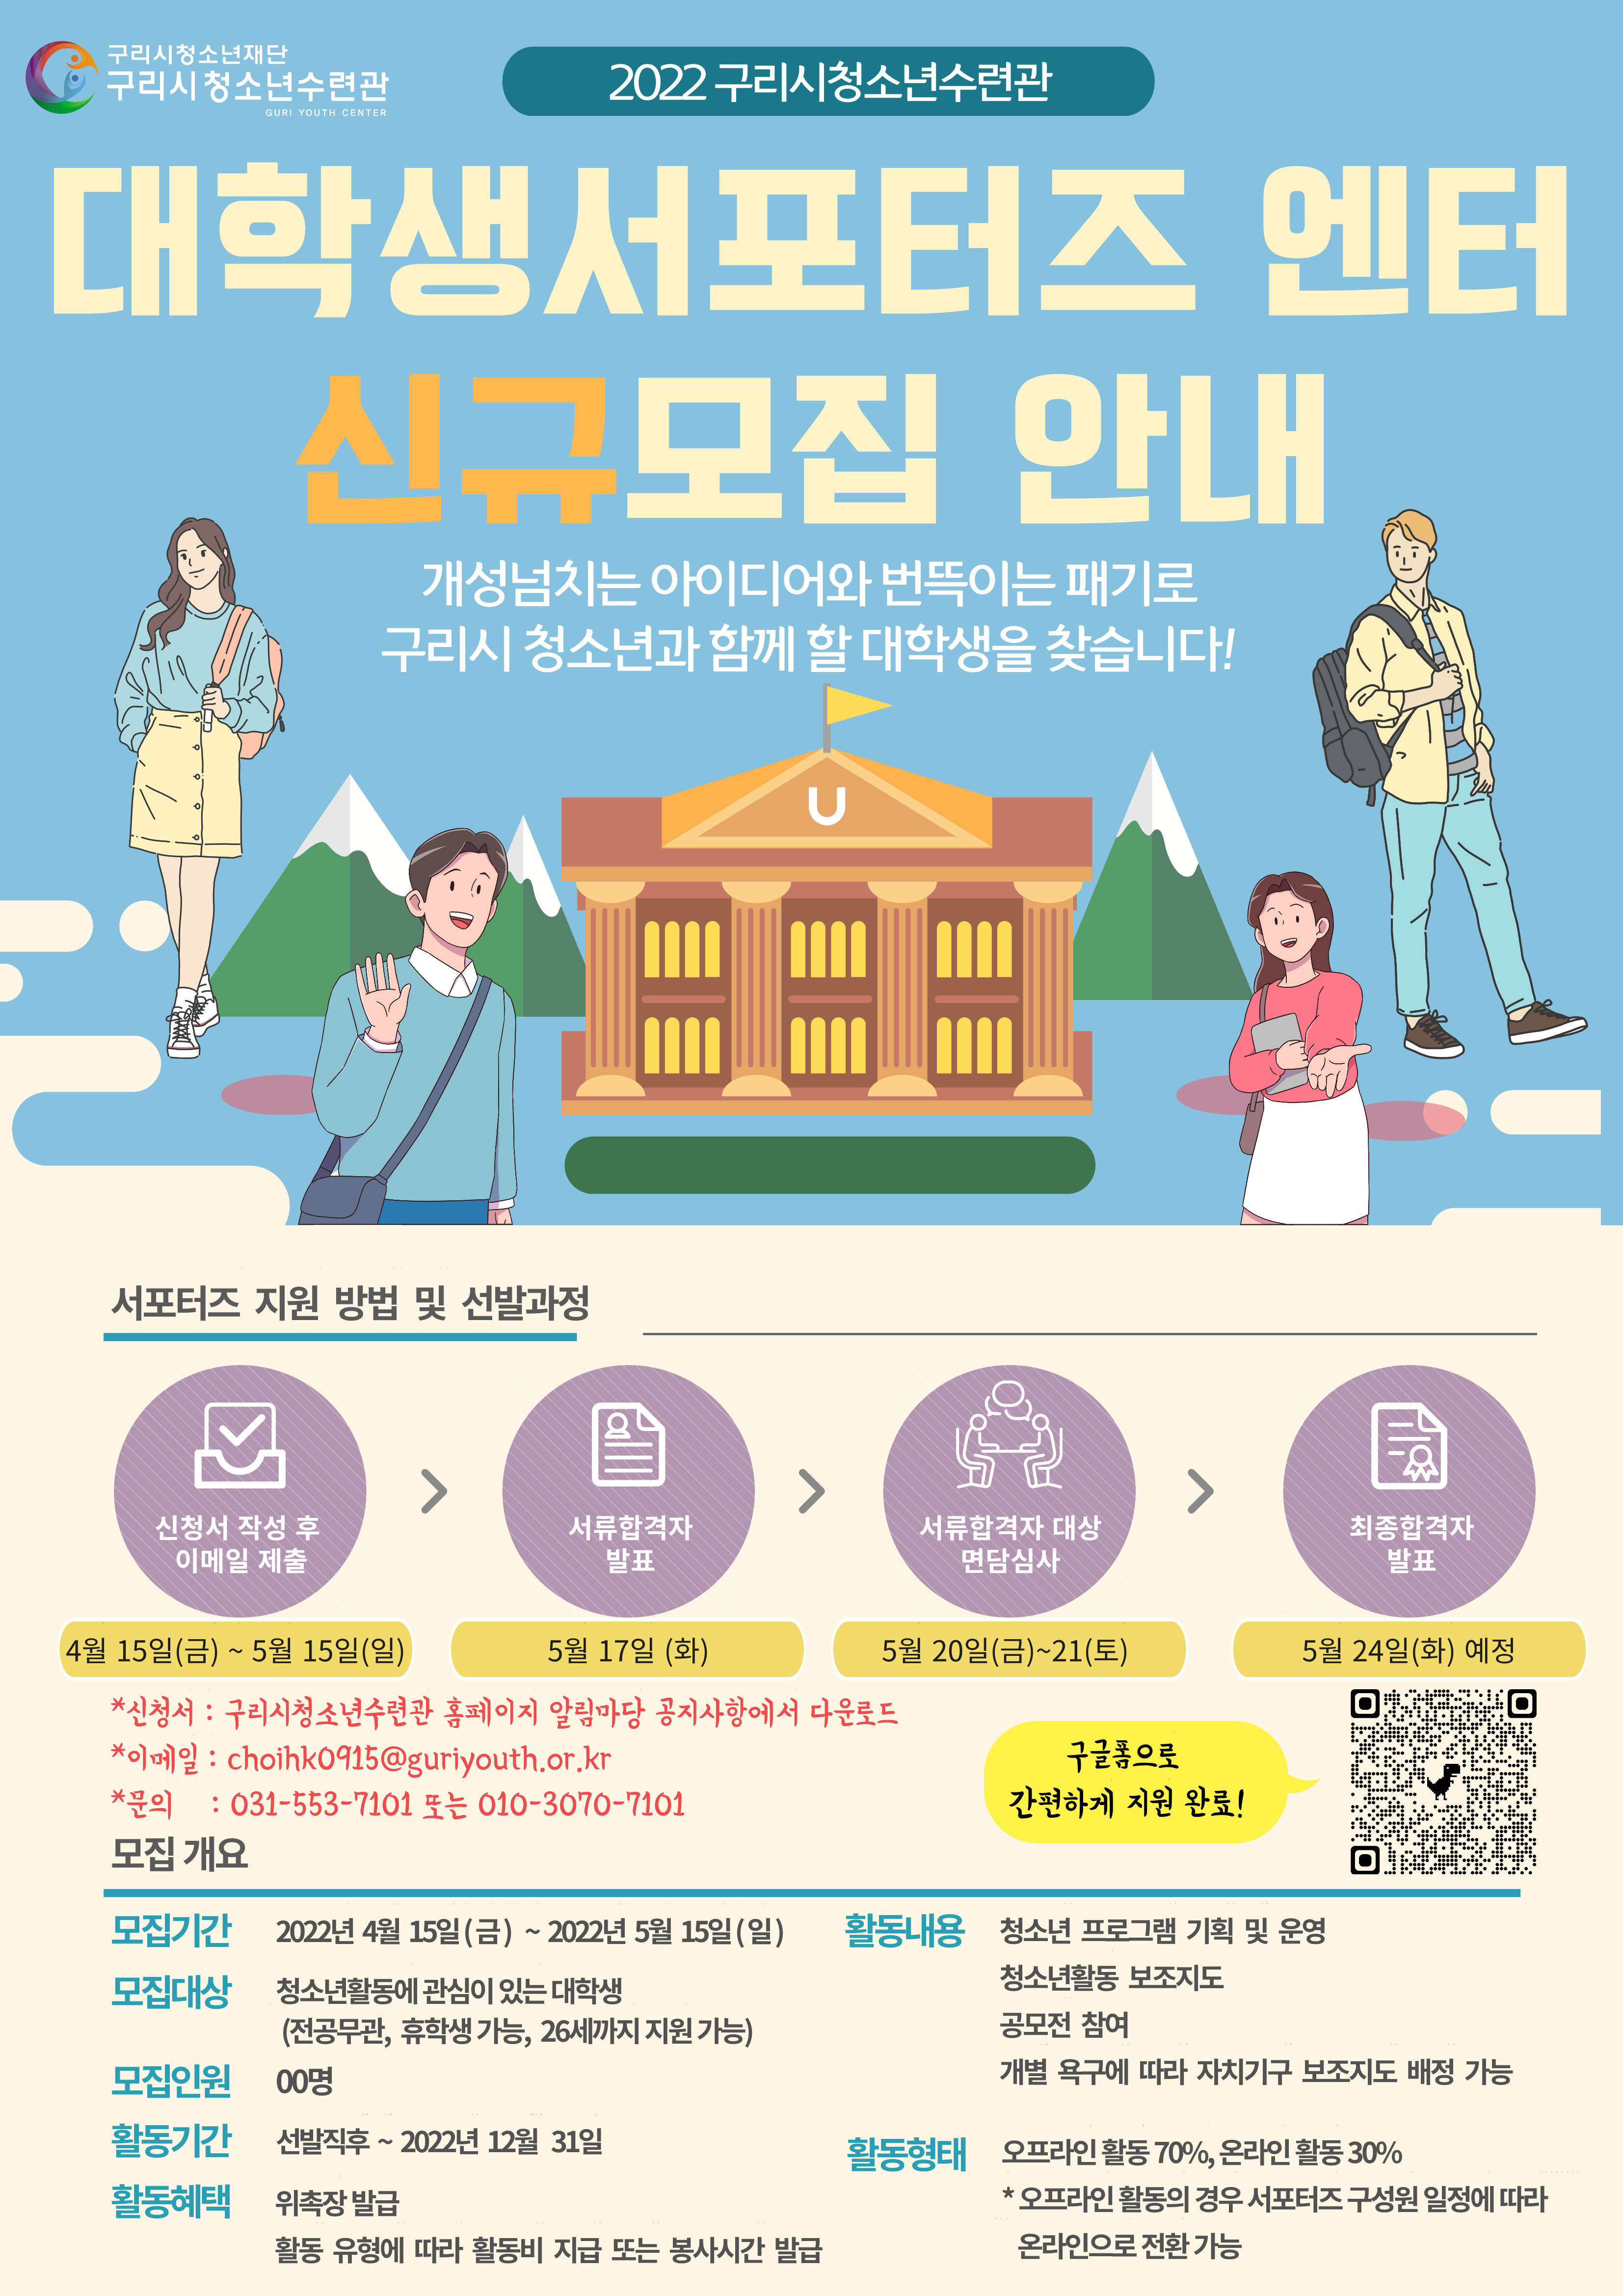 [복사본] 2022 대학생서포터즈 모집 홍보물_1.png